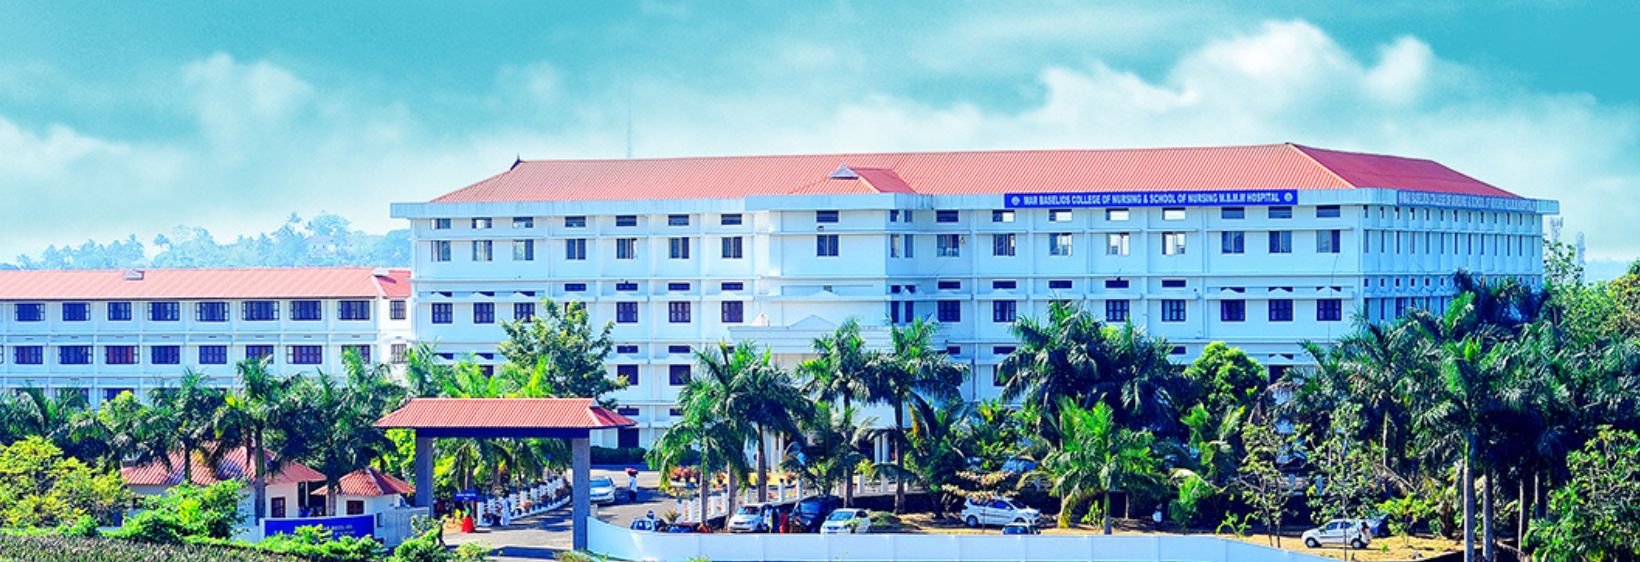 Mar Baselios College of Nursing - Ernakulam